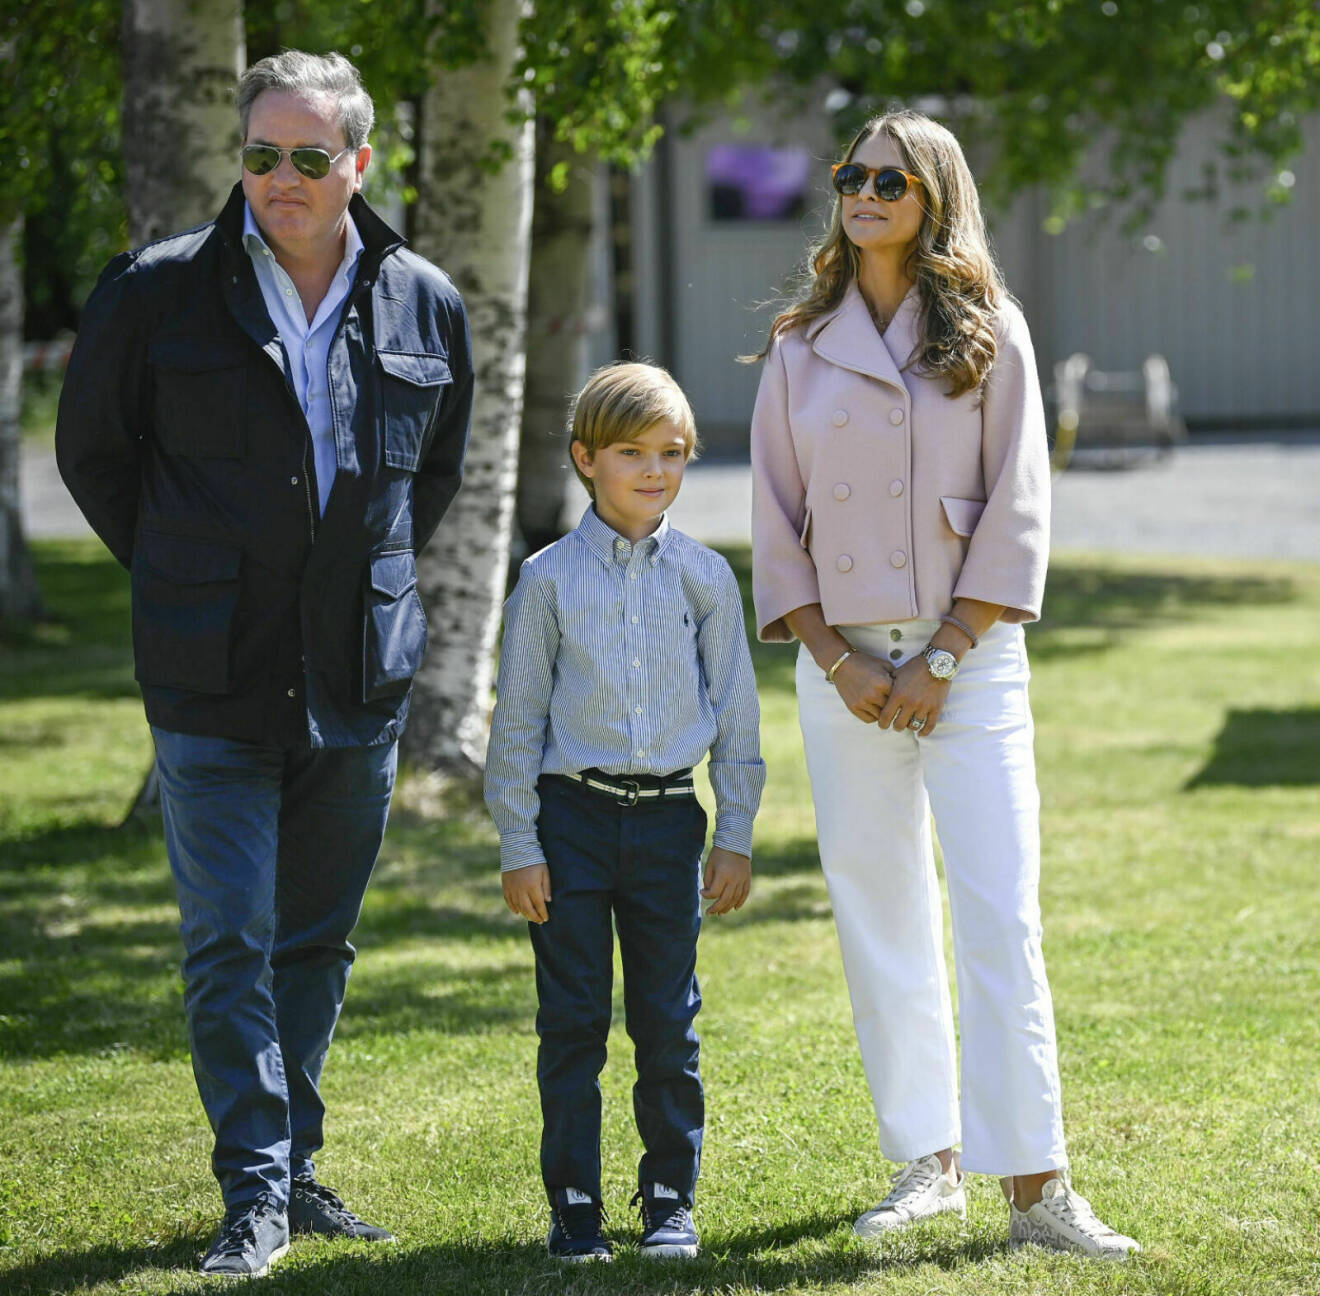 Chris O'Neill, prinsessan Madeleine och prins Nicolas på besök i prins Nicolas hertigdöme Ångermanland i somras